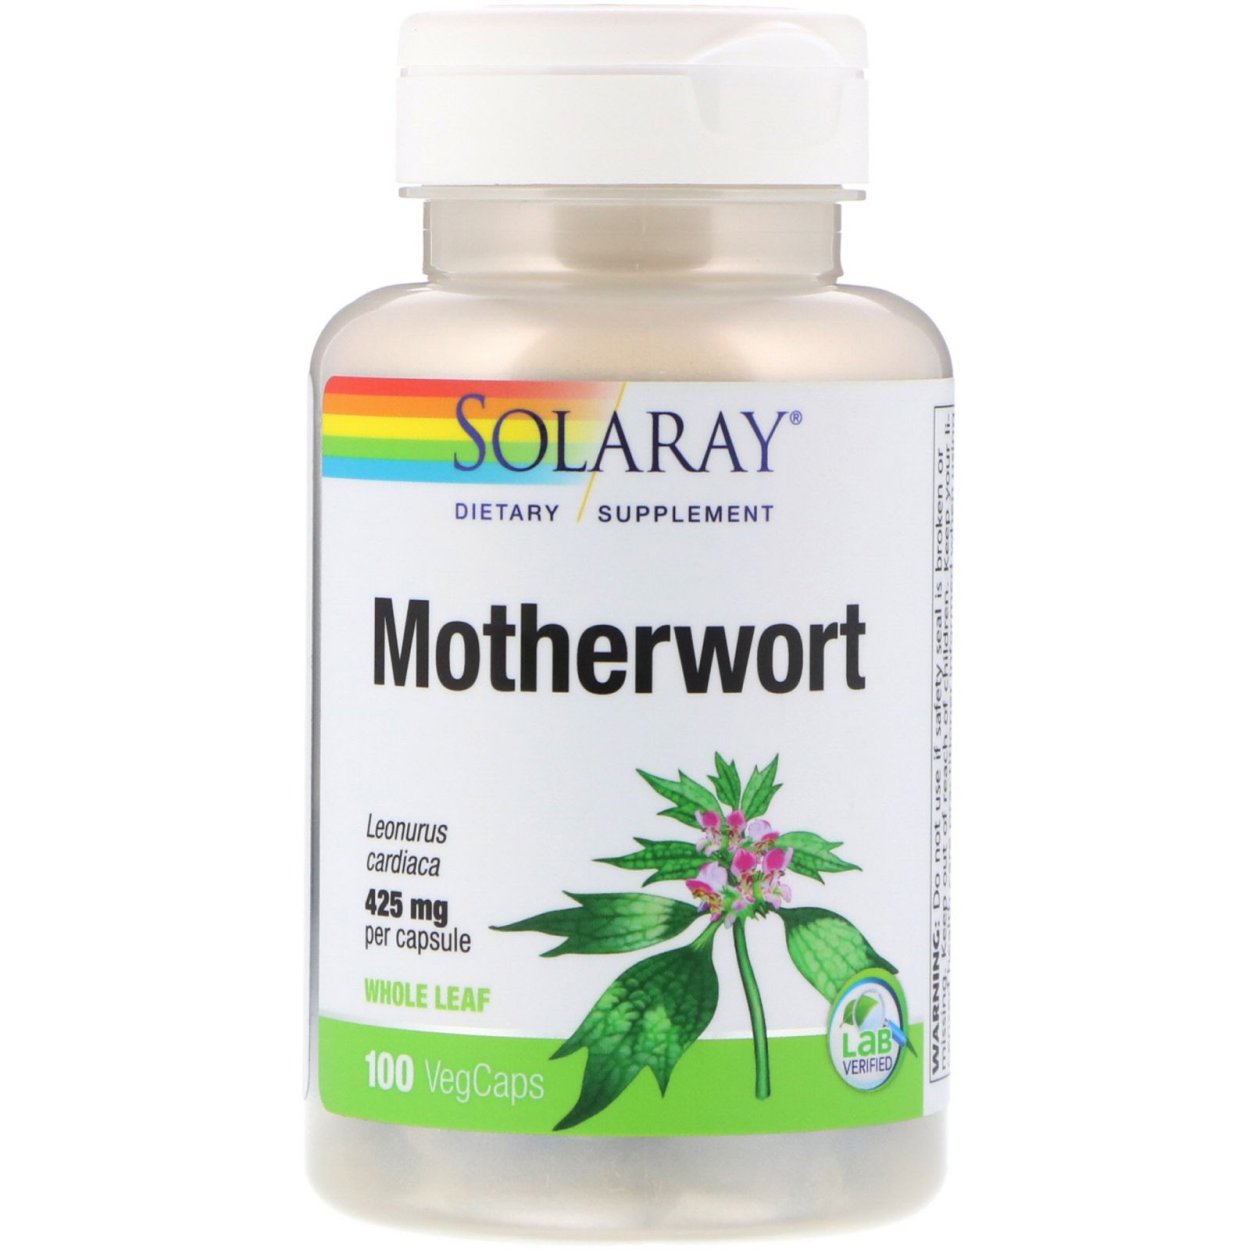 Benefits of Motherwort Supplements